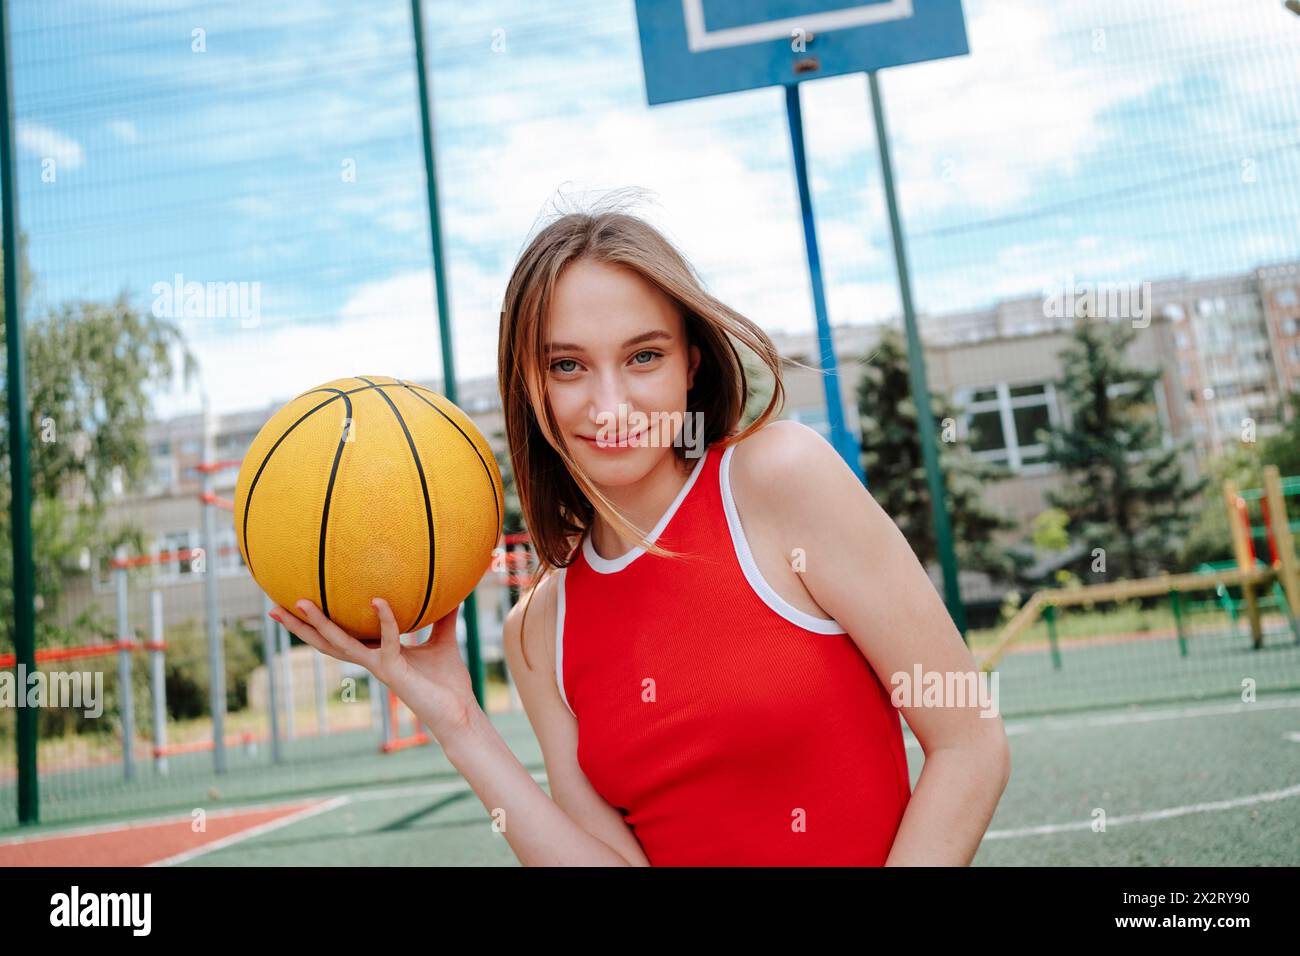 Joueur de basket-ball souriant tenant le ballon dans la cour d'école Banque D'Images